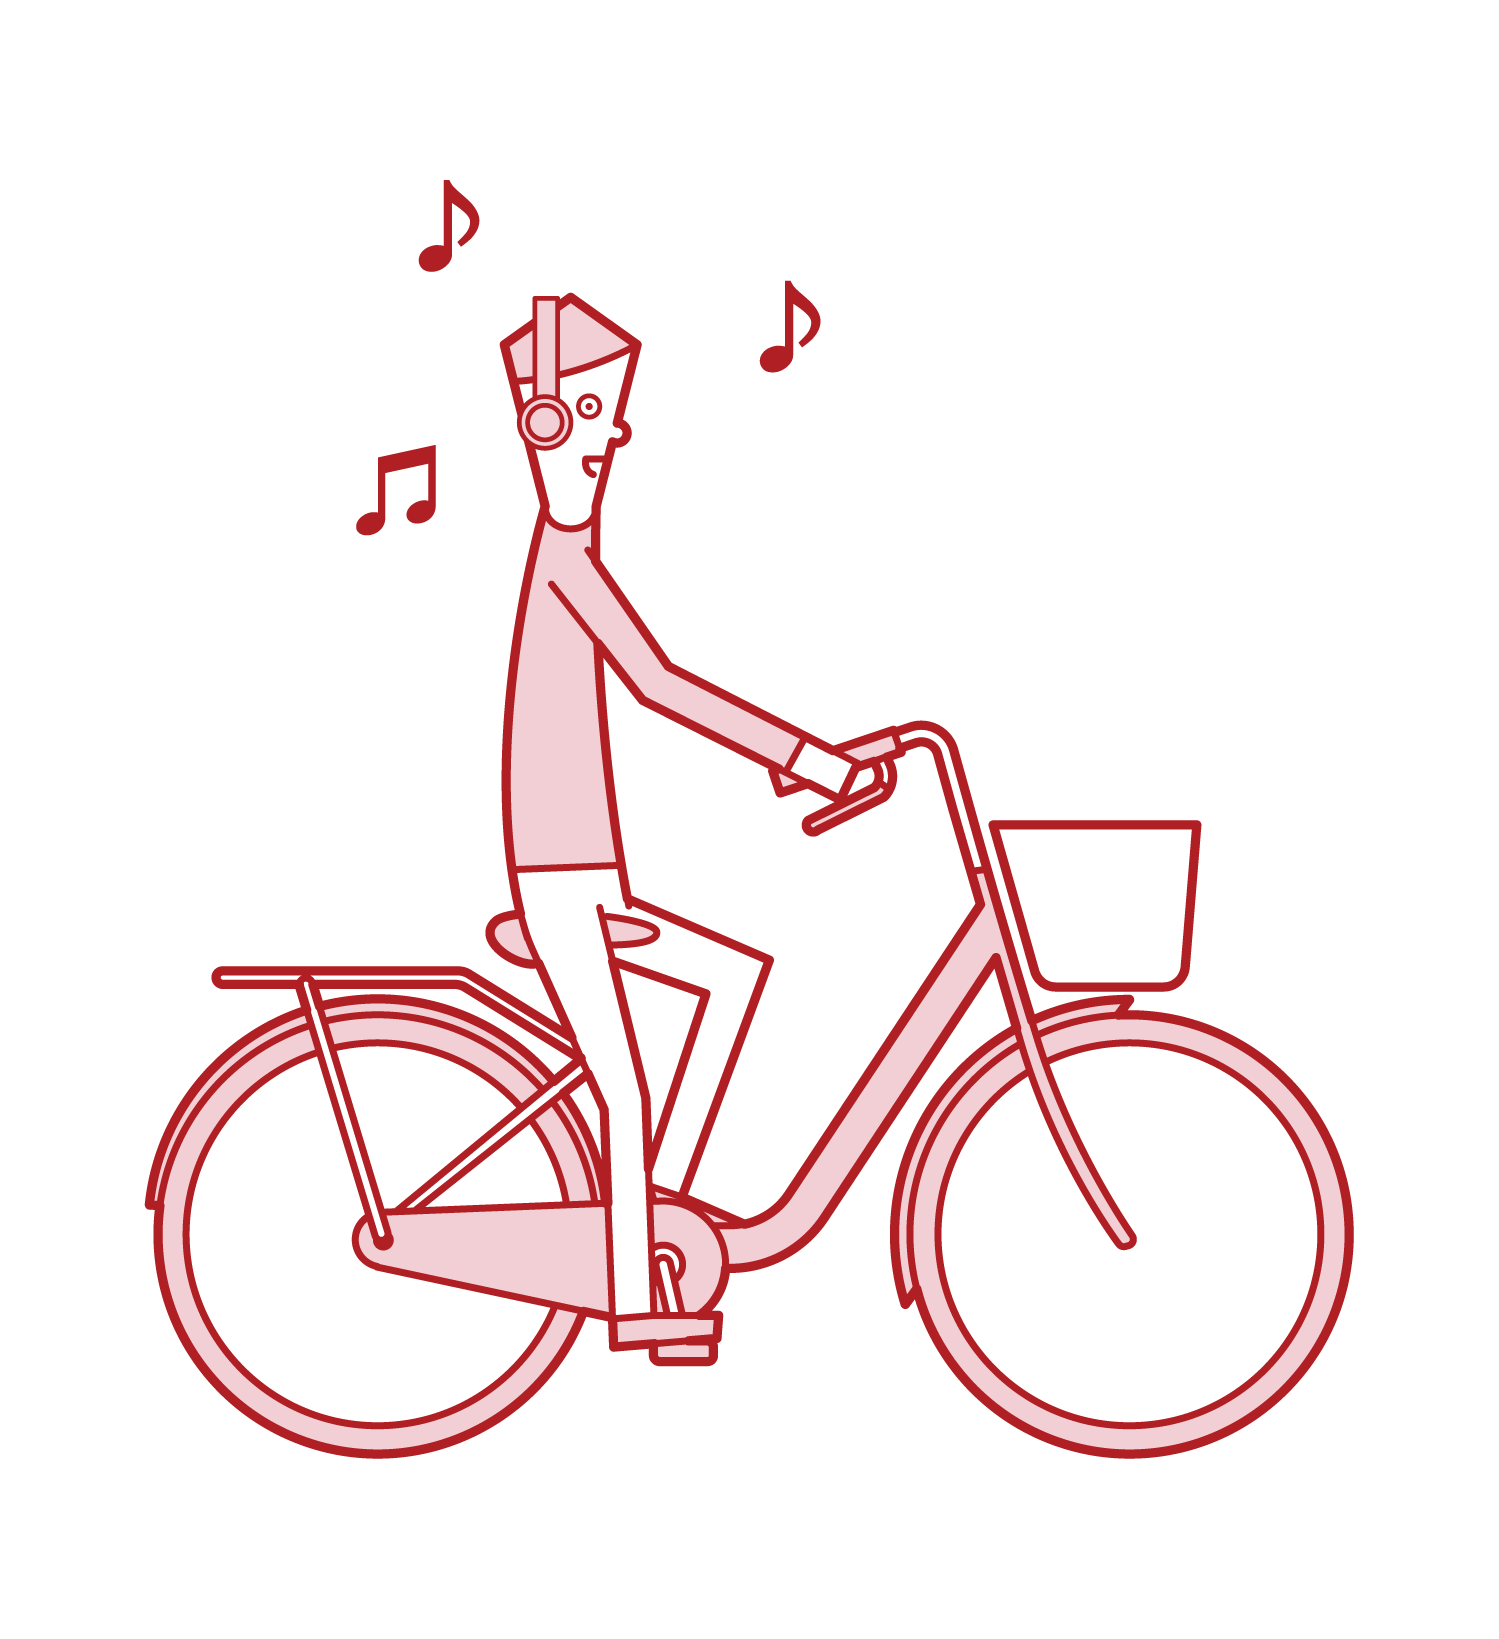 不聽音樂但騎自行車的人(男性)的插圖